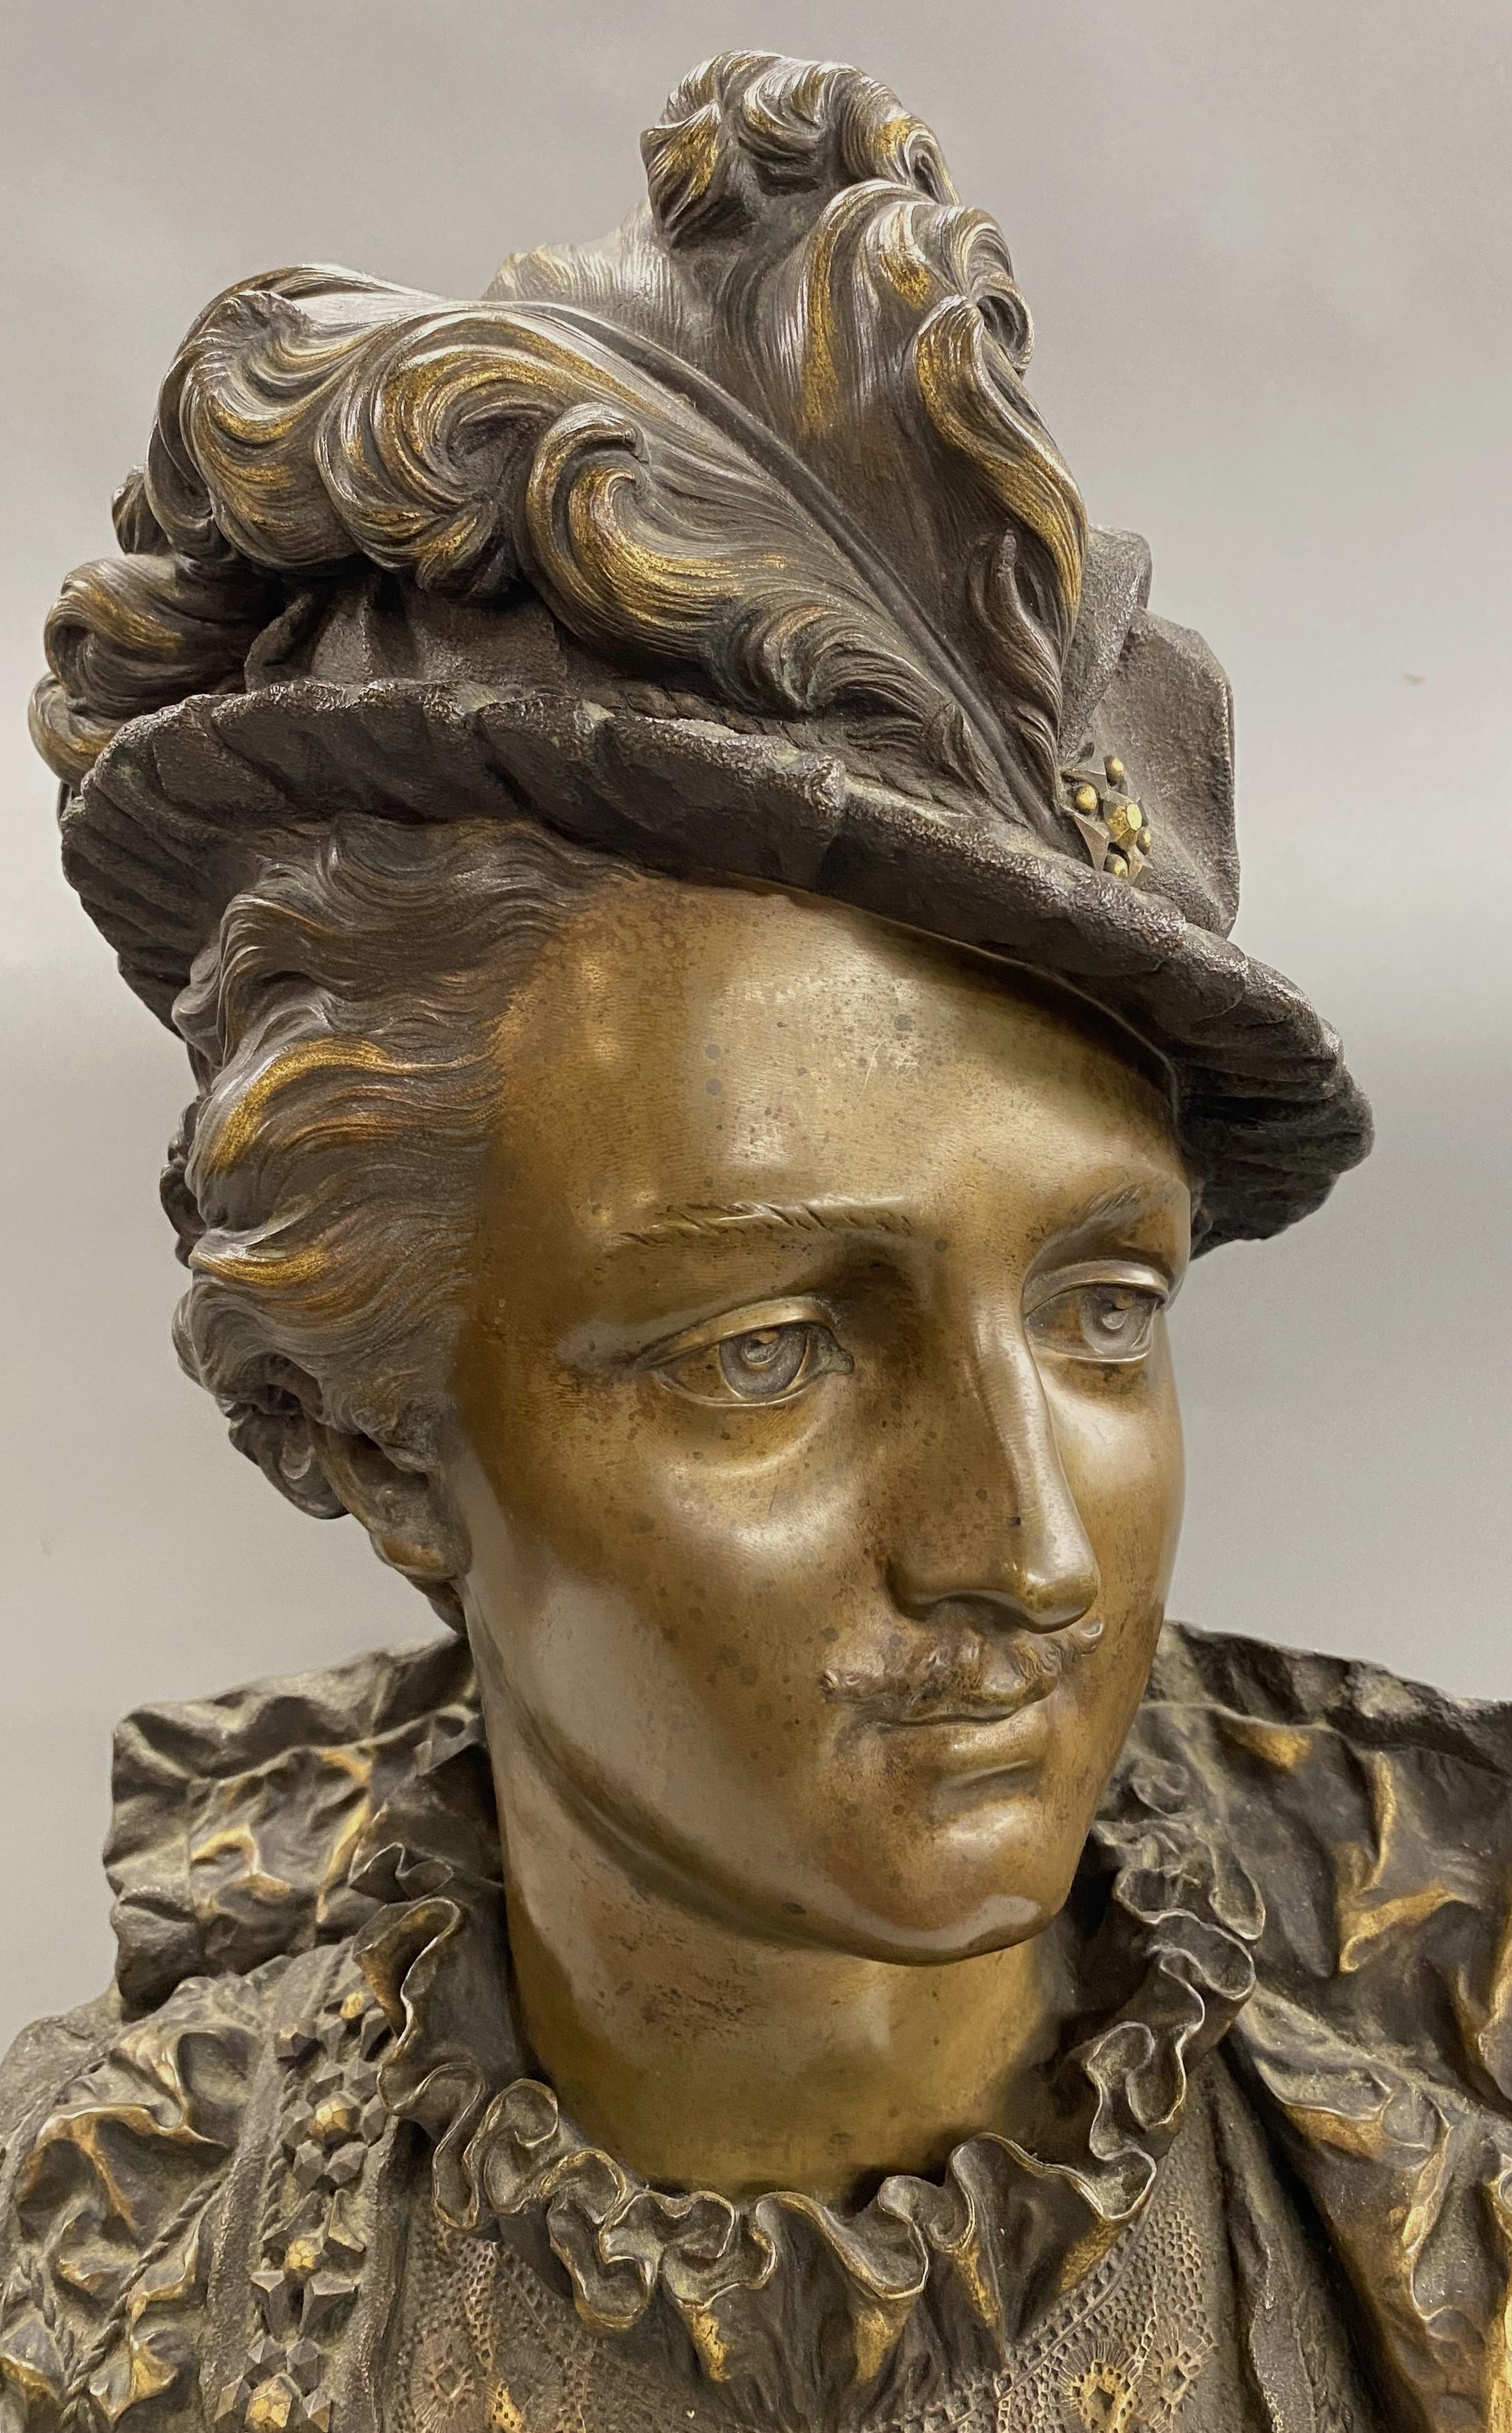 Eine schöne patinierte Bronzebüste eines französischen Adligen des französischen Bildhauers Ernest Rancoulet (1870-1915). Rancoulet wurde in Bordeaux, Frankreich, geboren und war vor allem für seine neoklassizistischen Bronzefiguren von